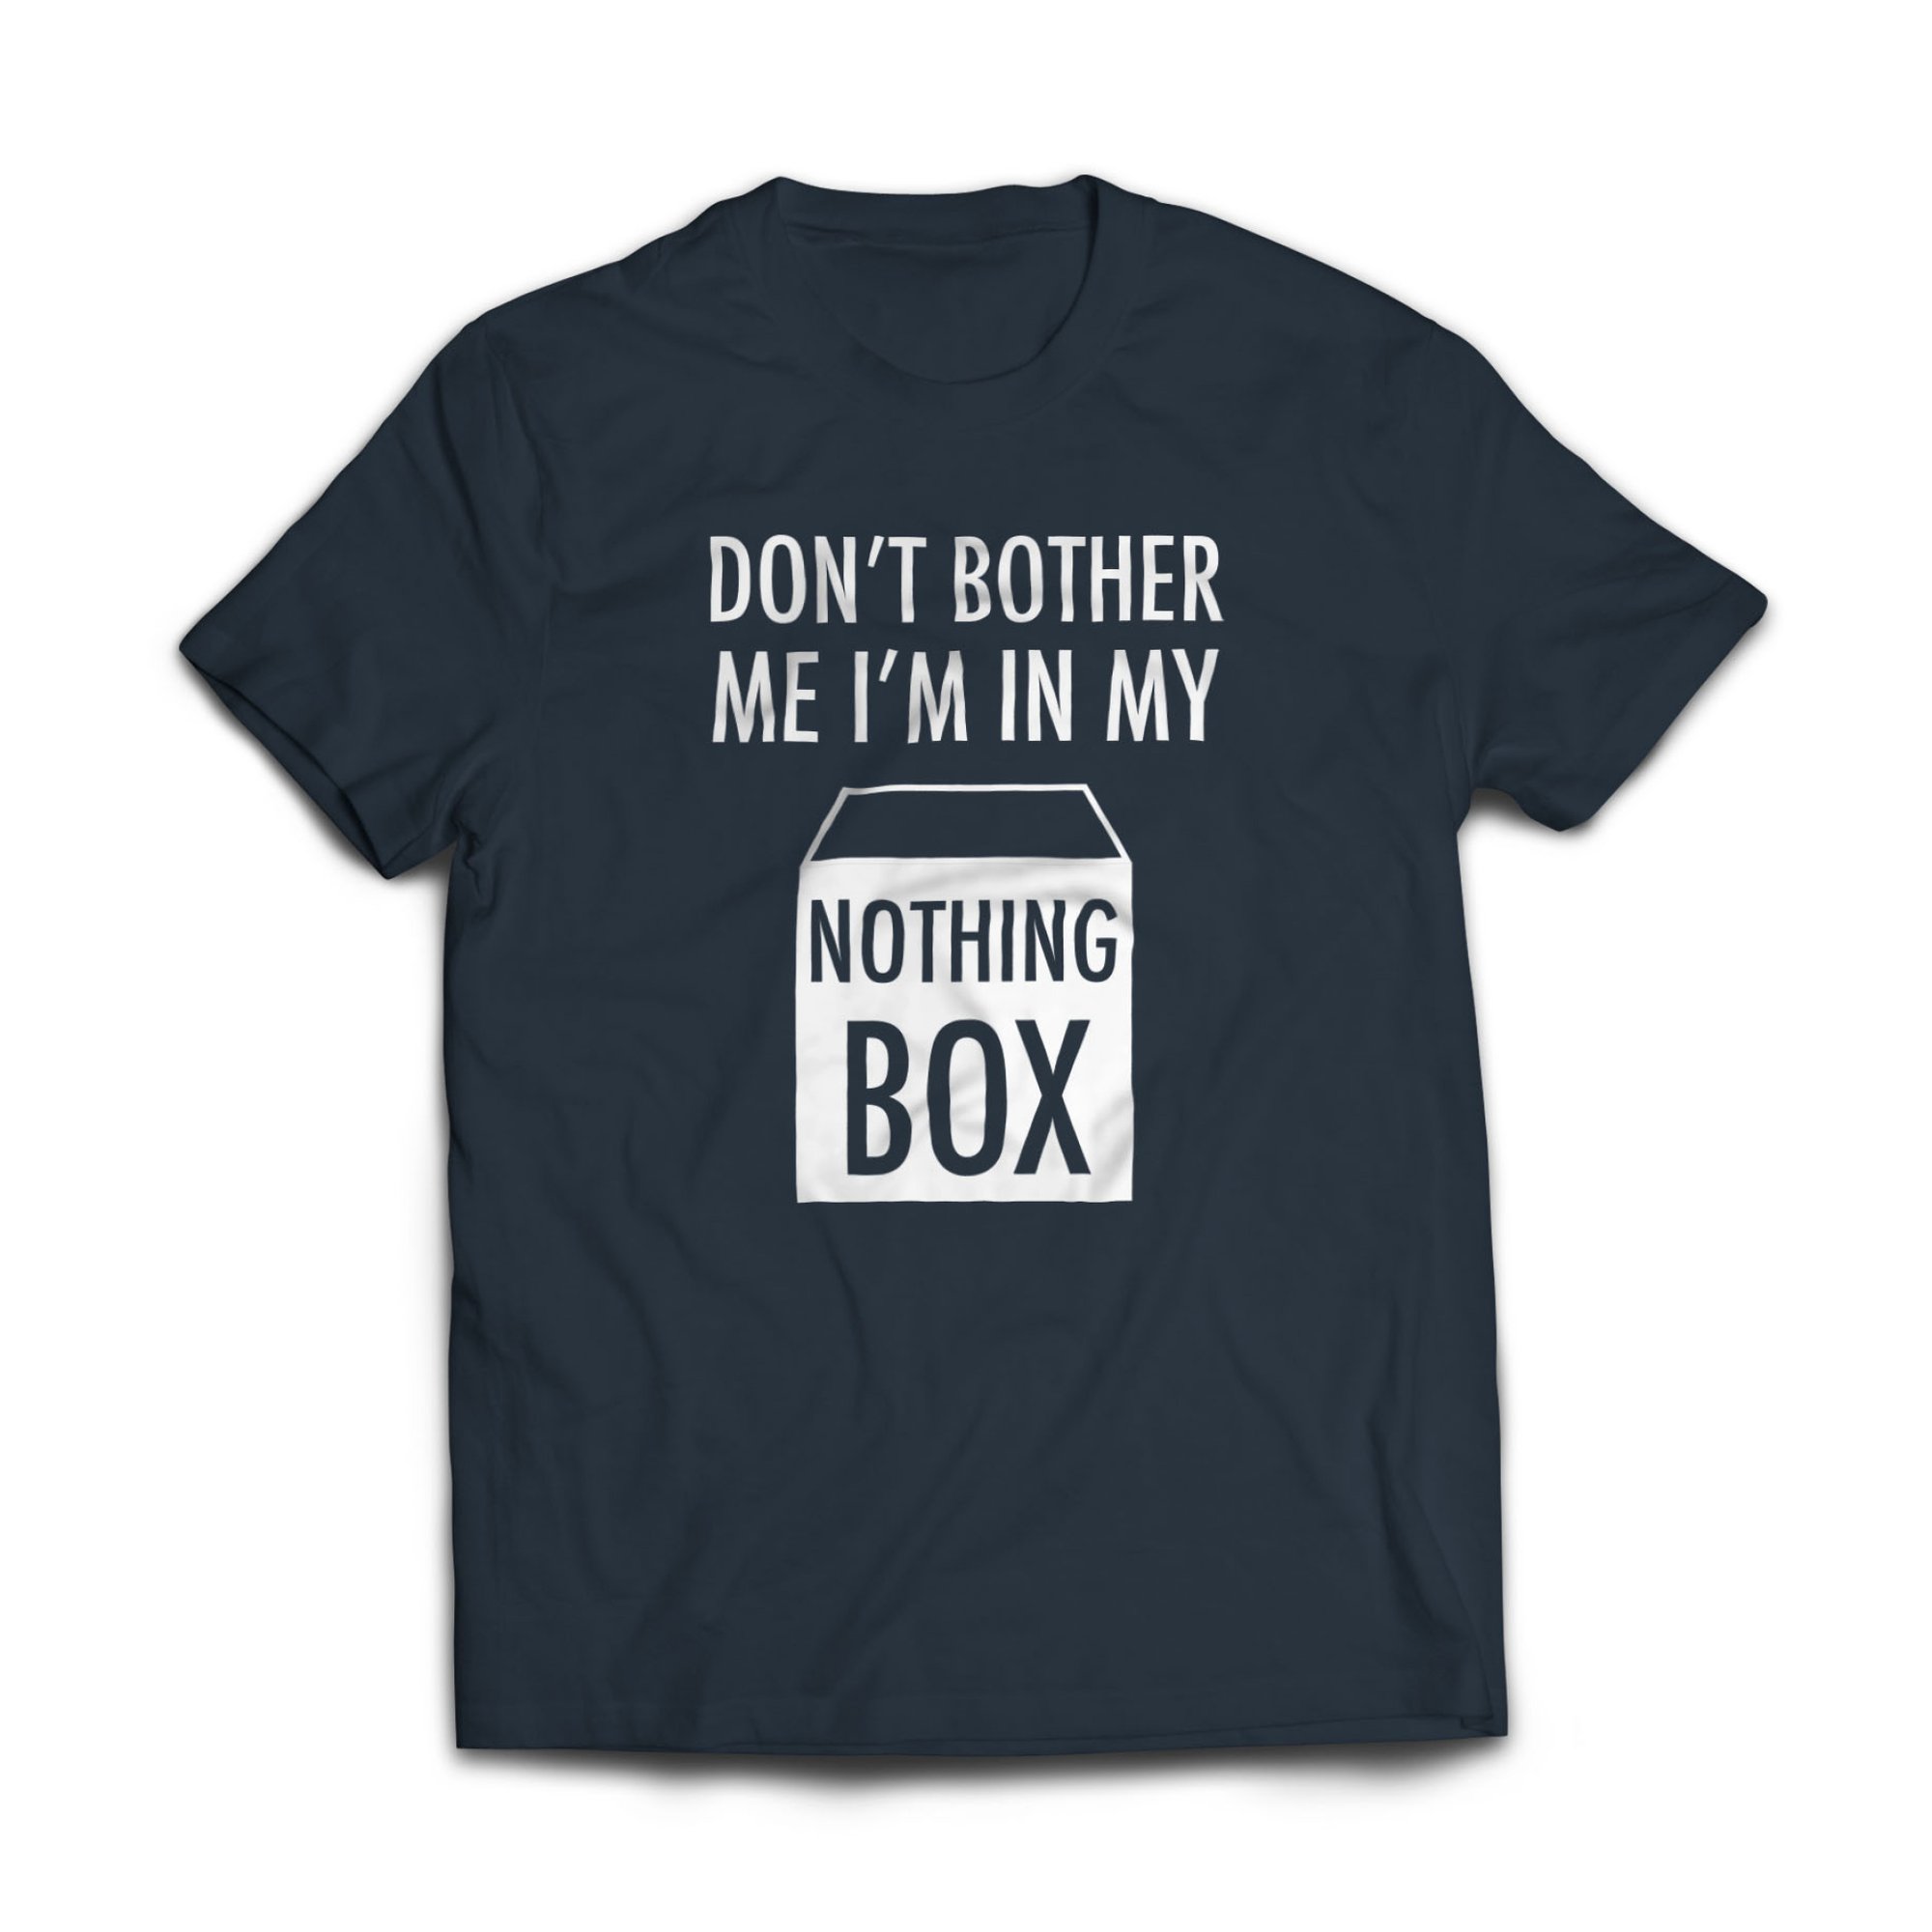 Nothing_Box_T-shirt_Web_1_2000x.jpg